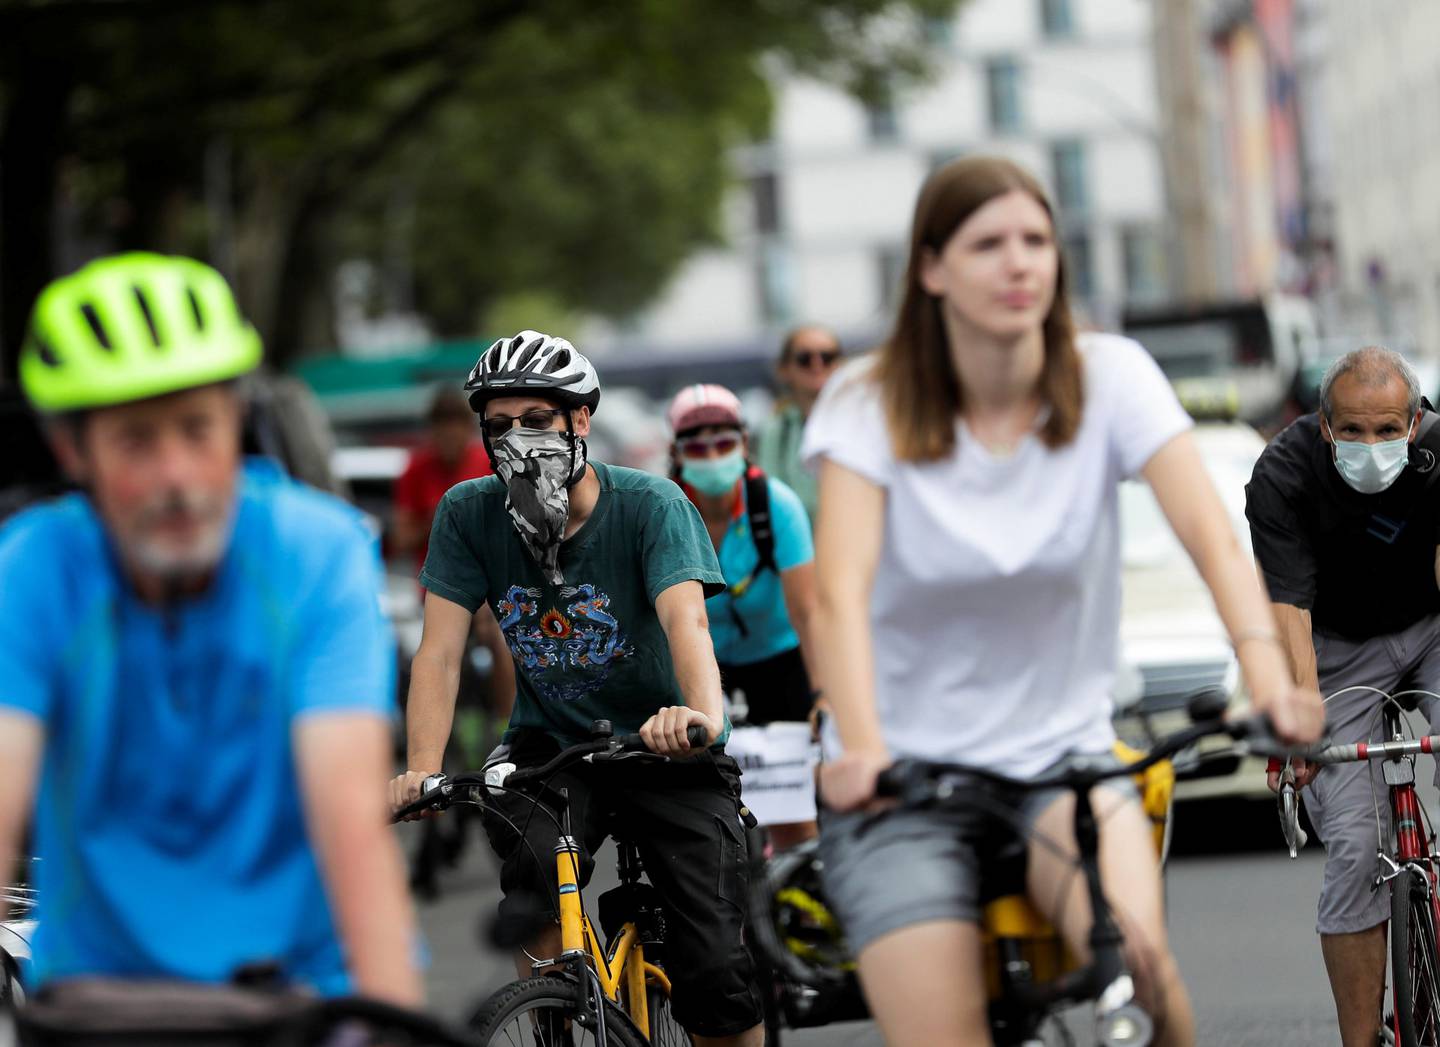 Sykkelprotest rundt det tyske transportdepartementet i Berlin, mot et planlagt møte mellom politikere og sjefer fra bilindustrien.